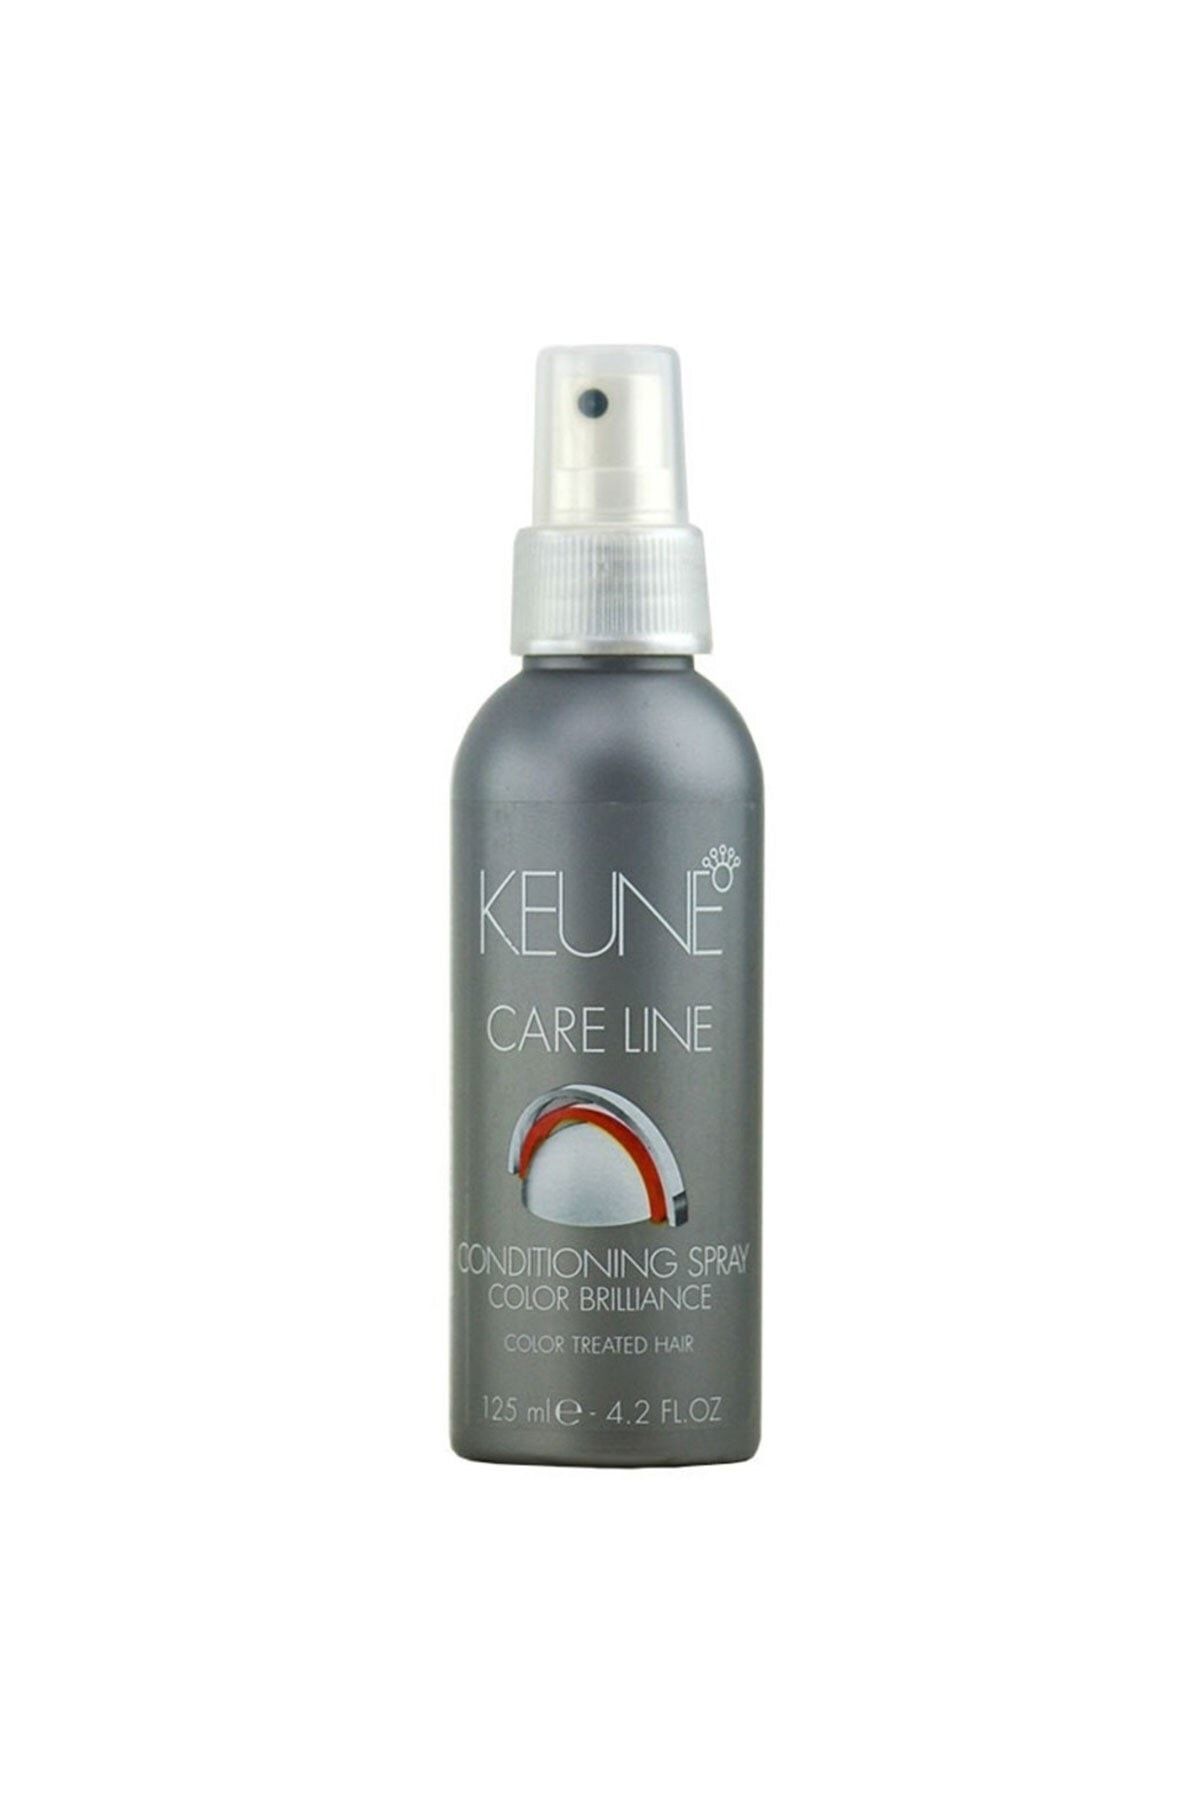 Keune Care Line Conditioner Spray / Boyalı Saçlar Için Durulanmayan Krem 125 ml